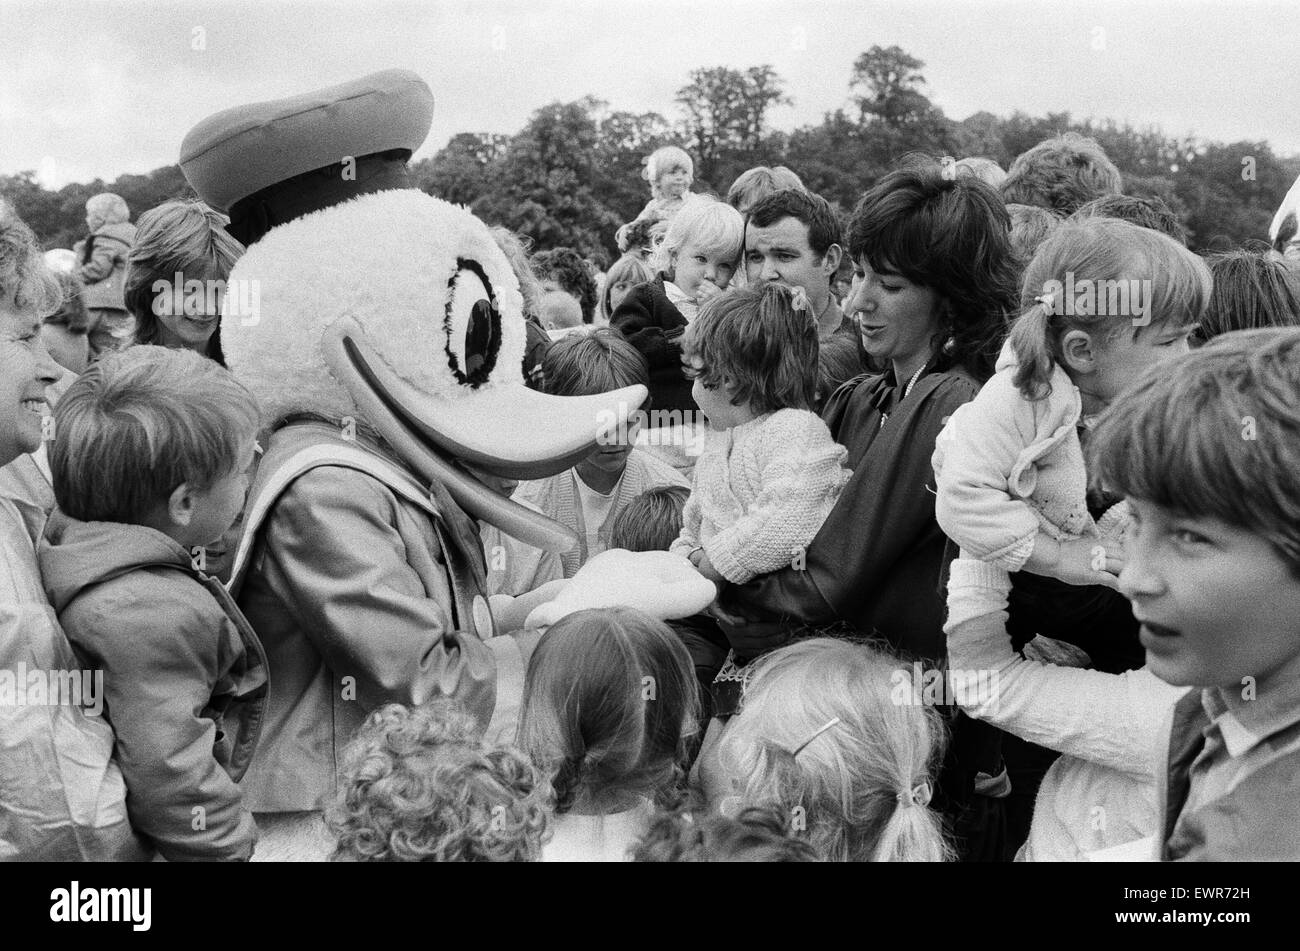 Le miroir a organisé une journée Disney pour les enfants à Lord et Lady Bath's Longleat House, dans le Wiltshire. Un jour où Ghislaine Maxwell a remis un chèque de 2000 € pour l'aide à l'enfance. 13 septembre 1985. Banque D'Images